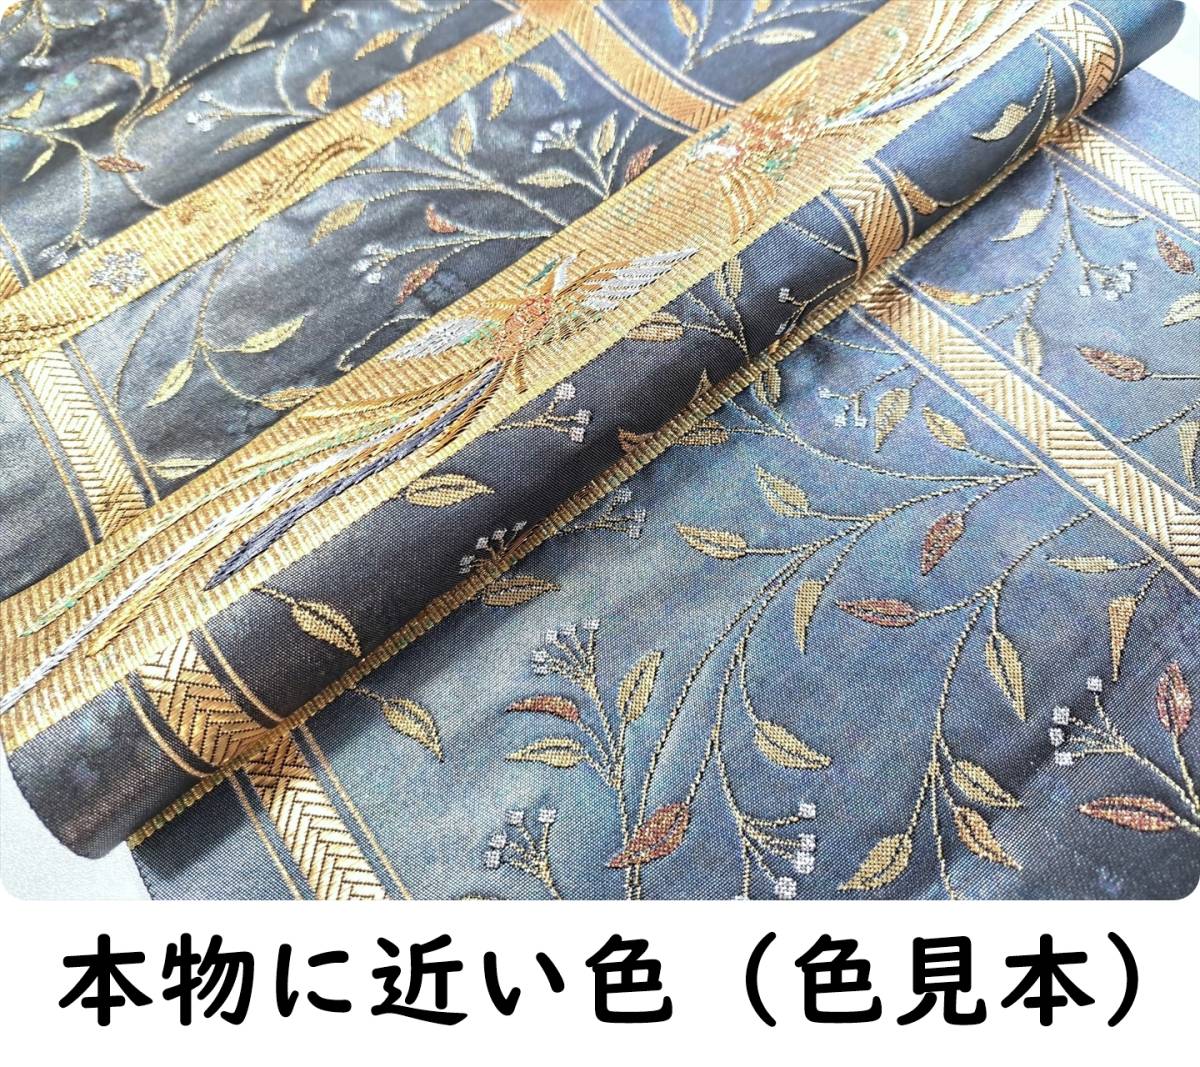 豪奢な お太鼓柄 袋帯 正絹 □着物の越田□幅30.5長さ437.5 訳あり品